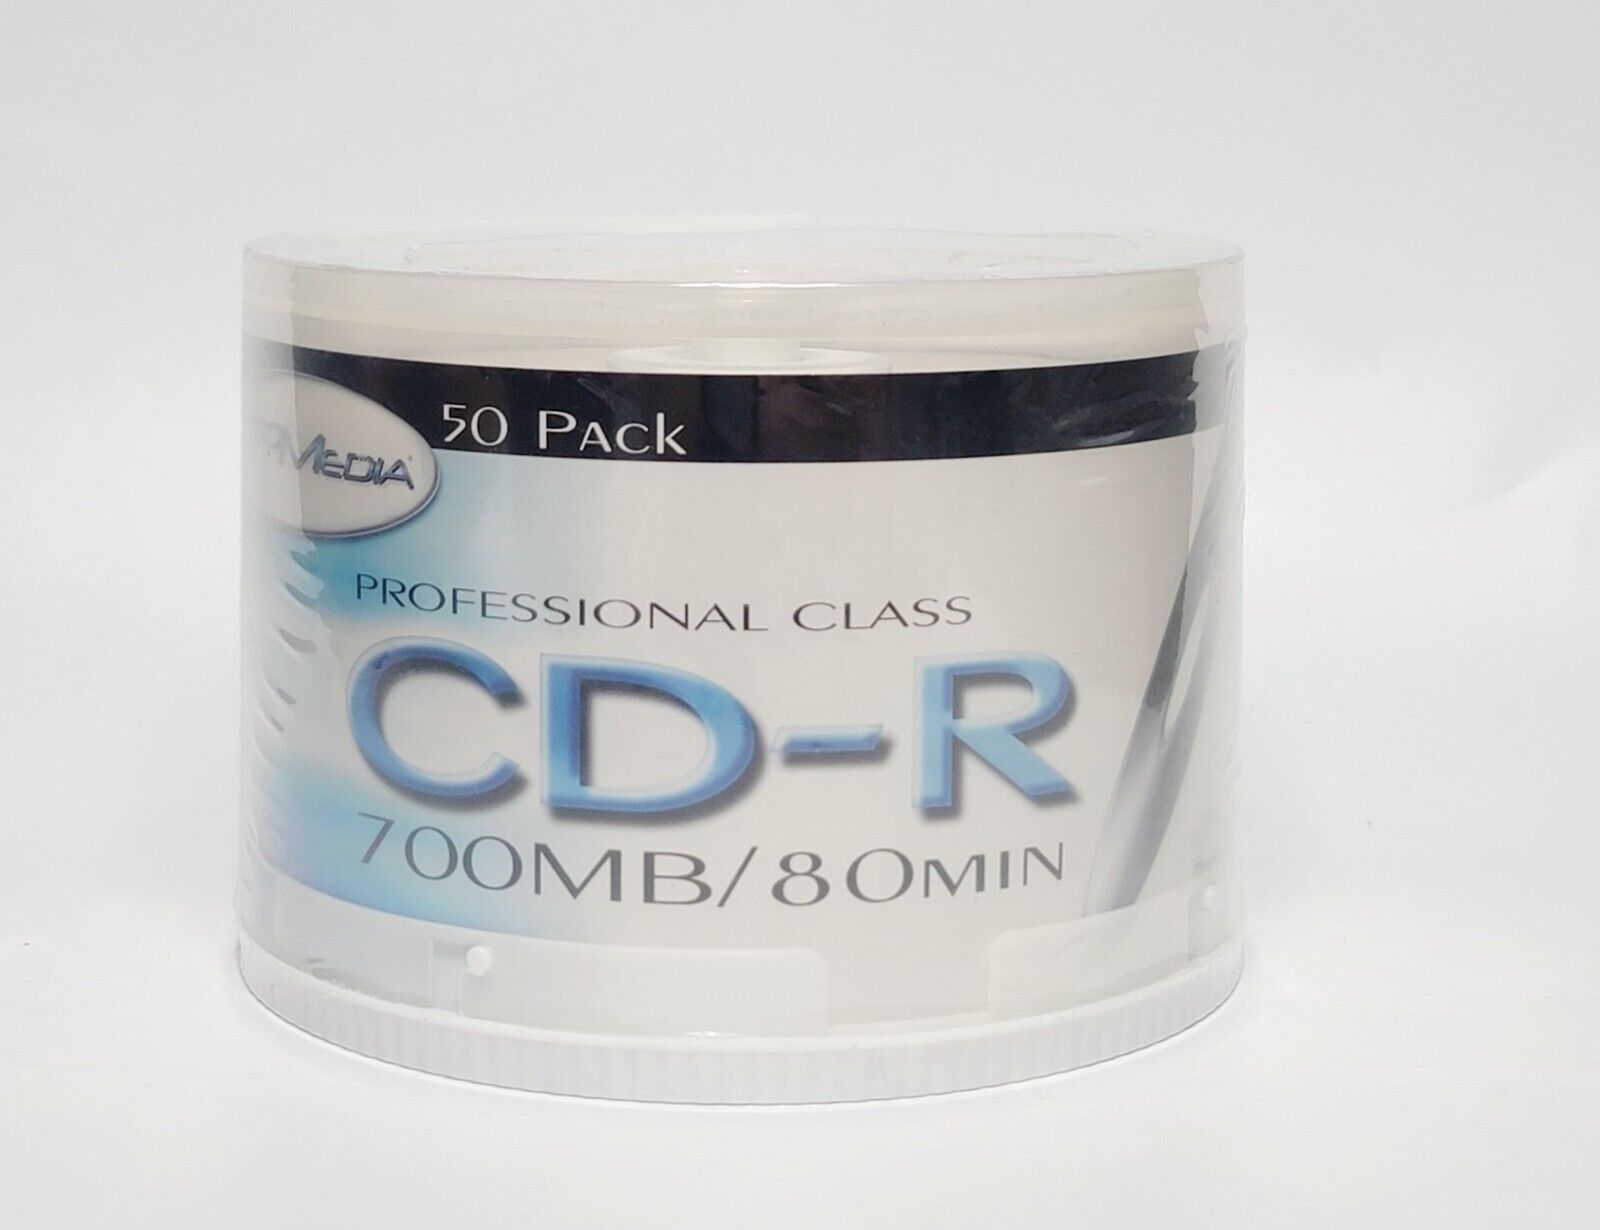 PROMedia Professional Class 50 PACK Disc CD-R 700MB 80min PCD-70BK-5052 52x Max 